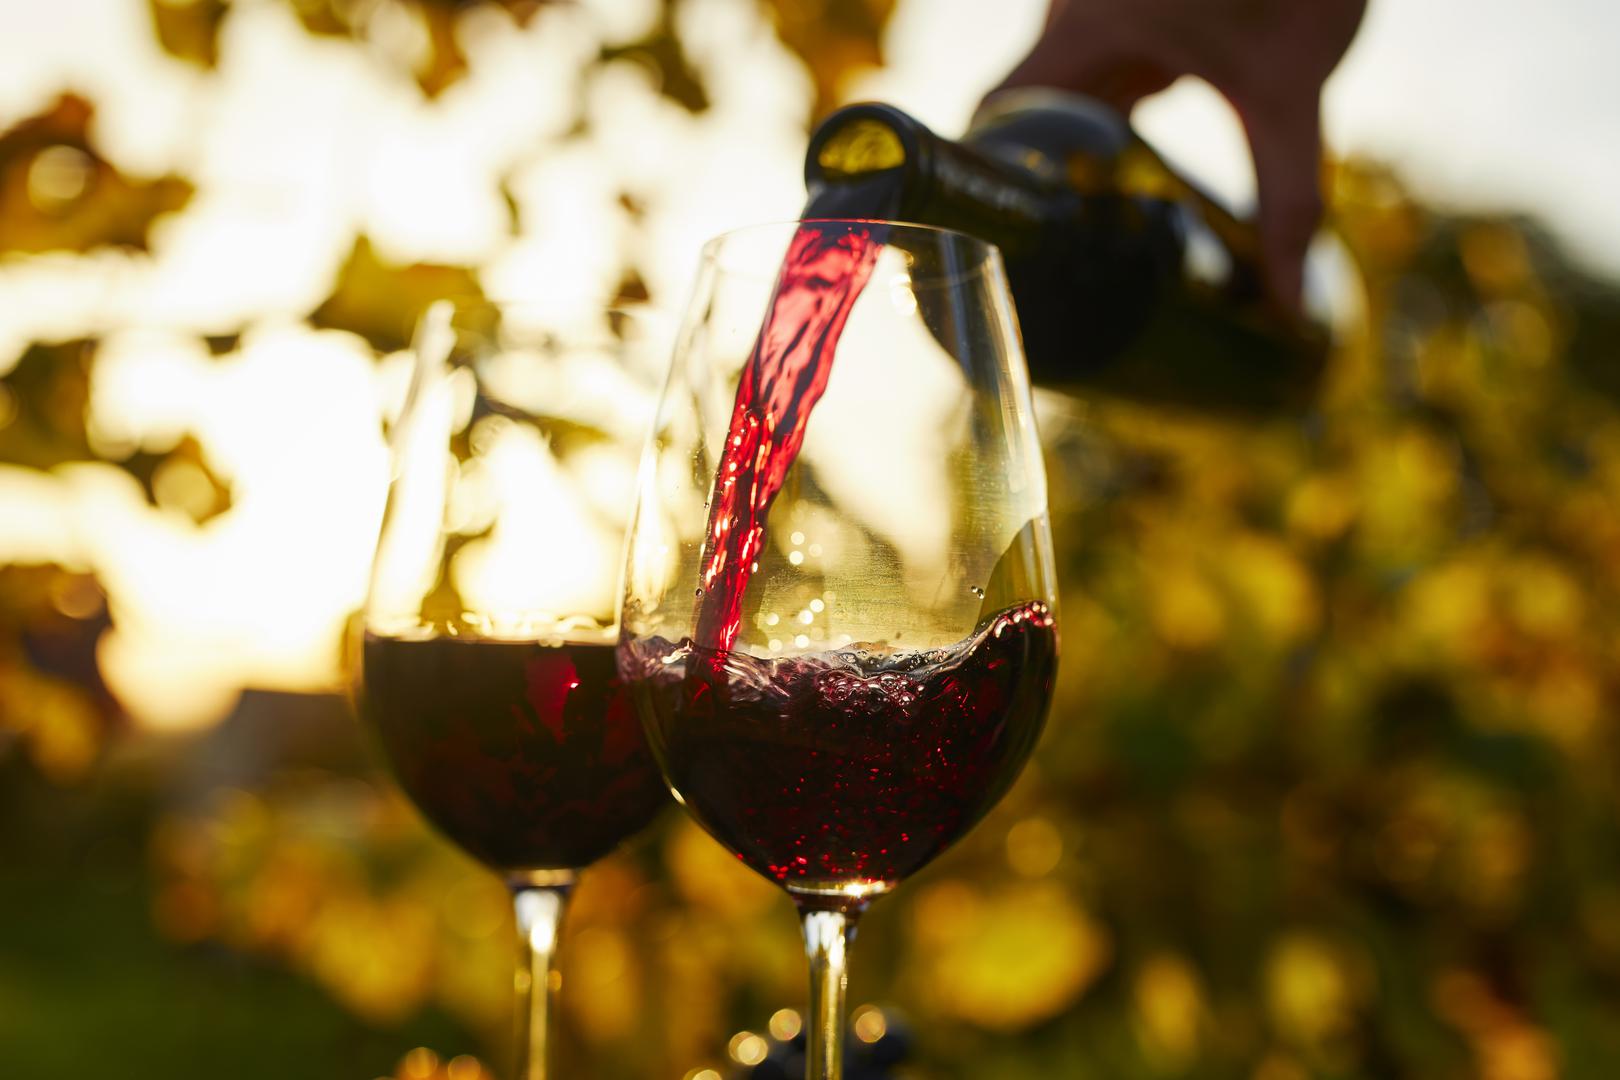 Crno vino: Dijetetičarka Tracy Frimpong tvrdi da crvena vina sadrže polifenole i antioksidanse koji mogu pomoći u poboljšanju zdravlja srca i mozga. Ima otprilike 100 do 160 kalorija po čaši, a sadrži manje od jednog grama šećera.